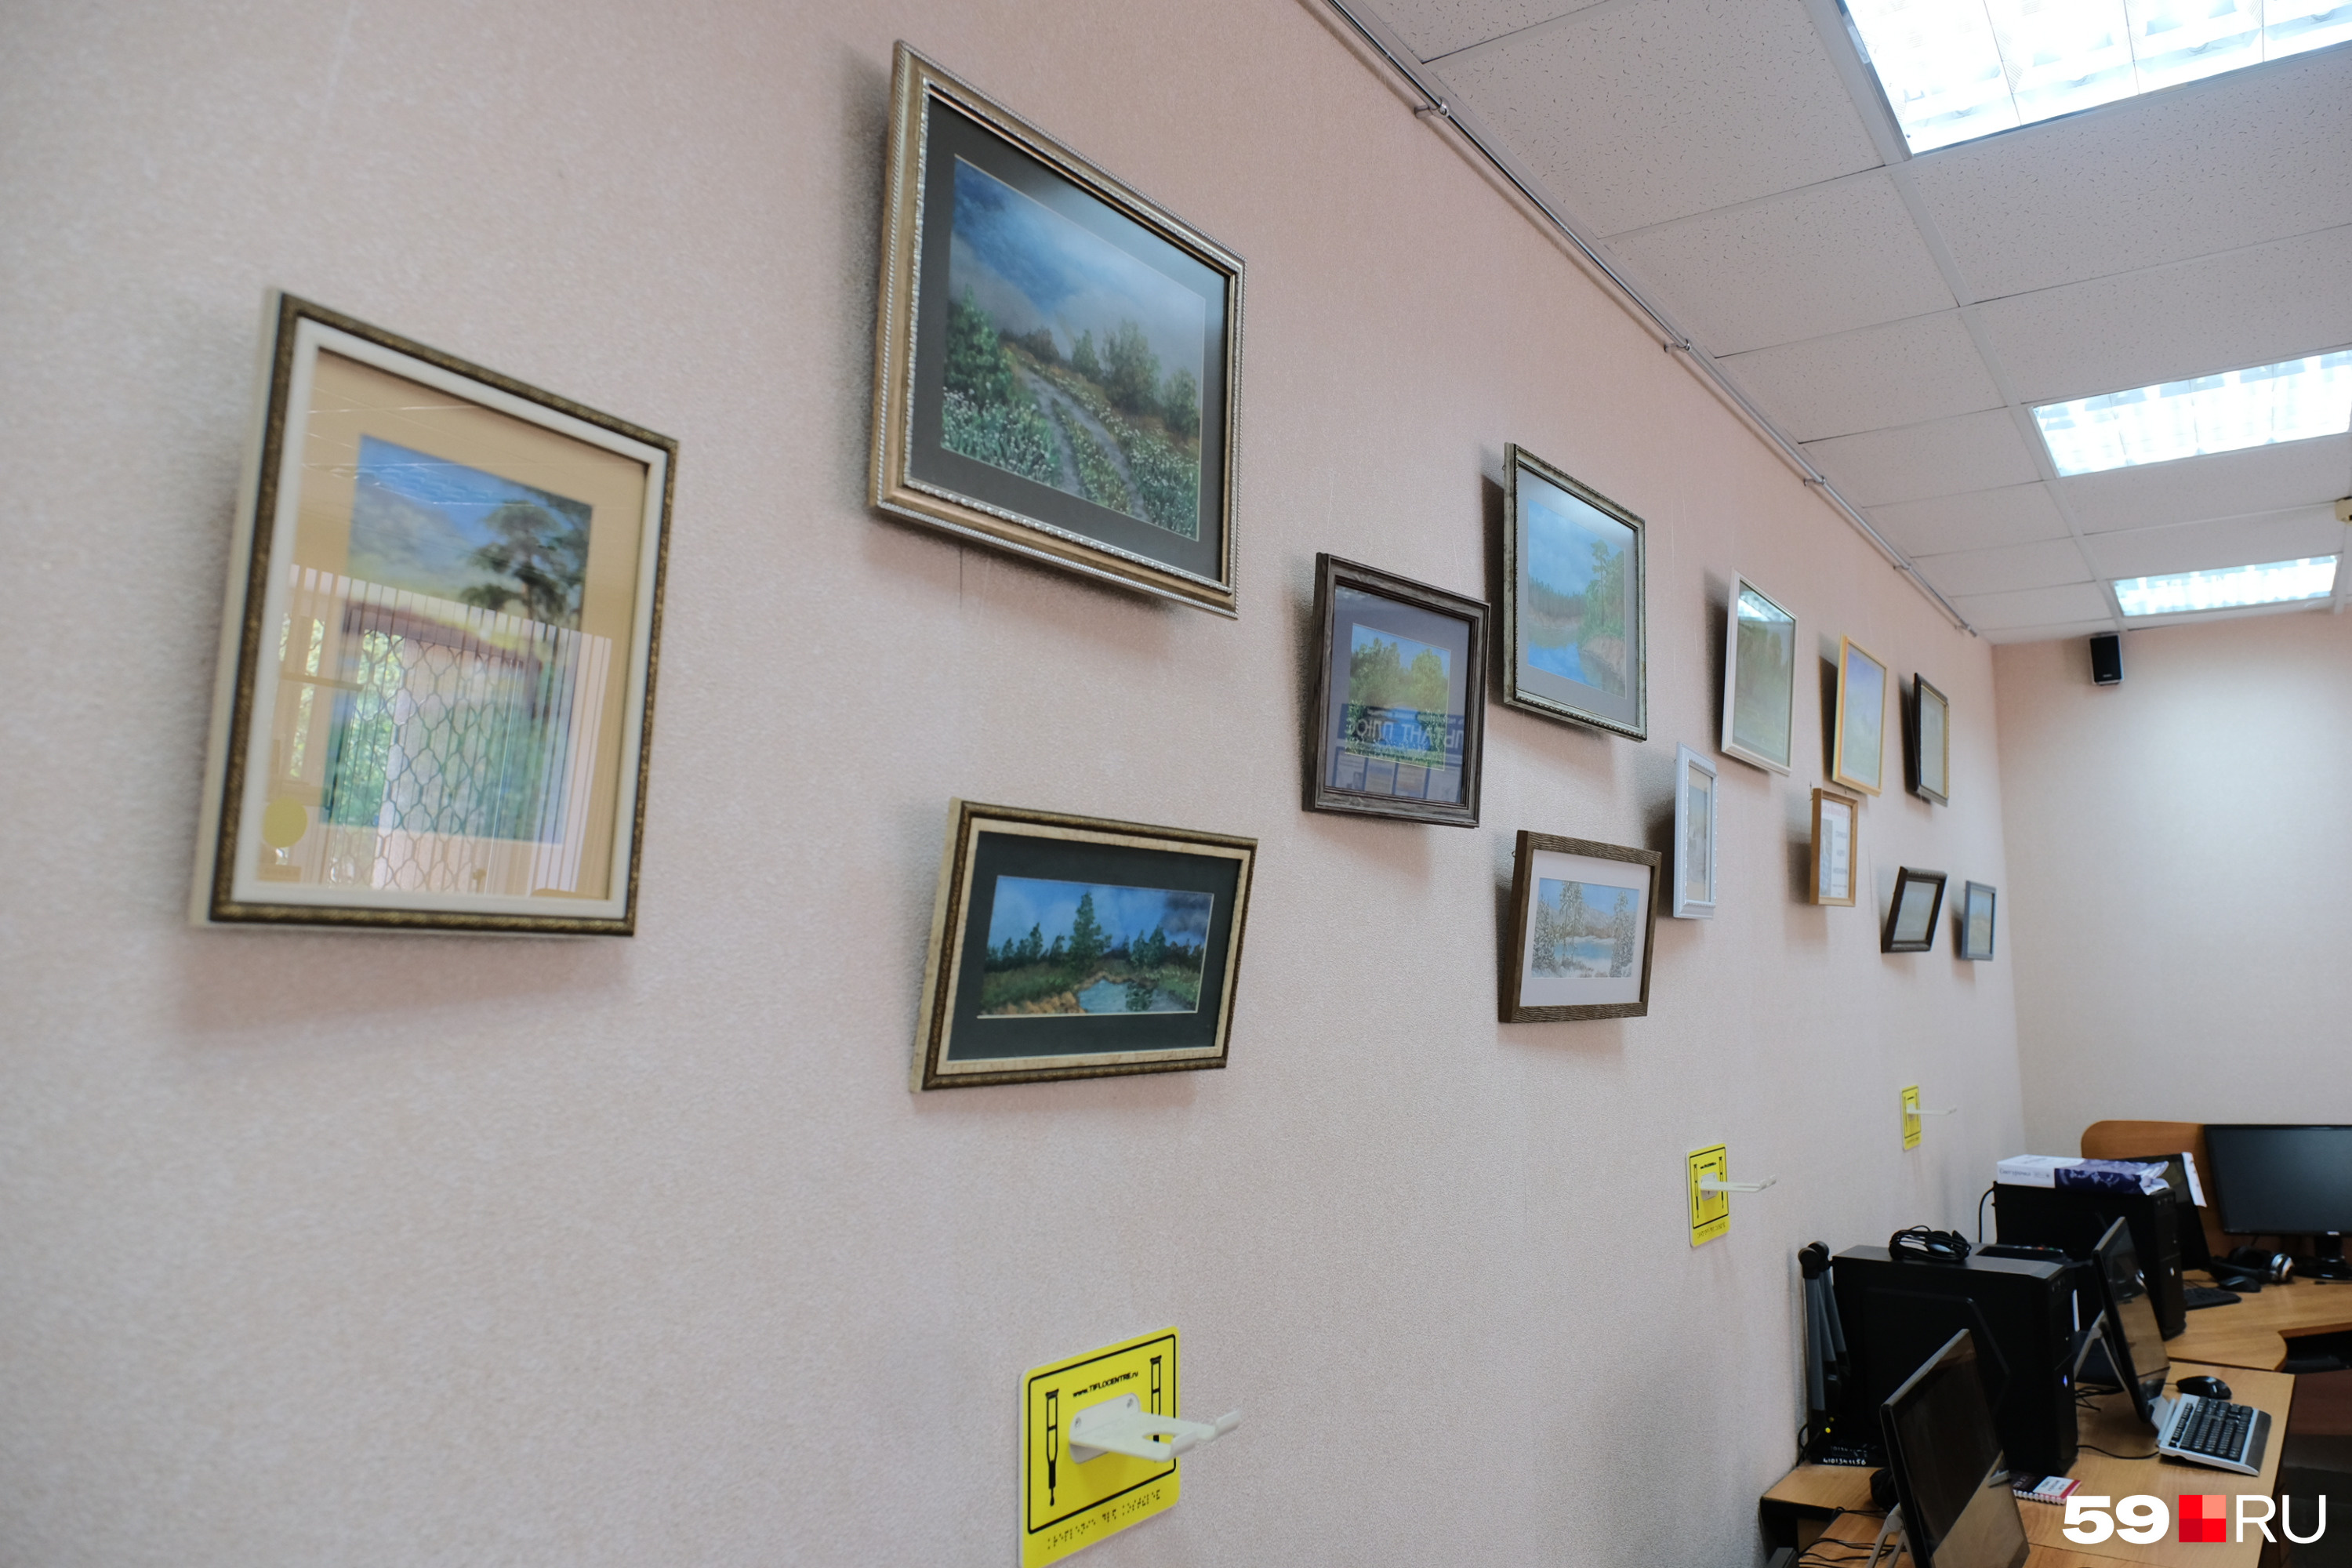 Эта выставка организована в библиотеке ДК Всероссийского общества слепых